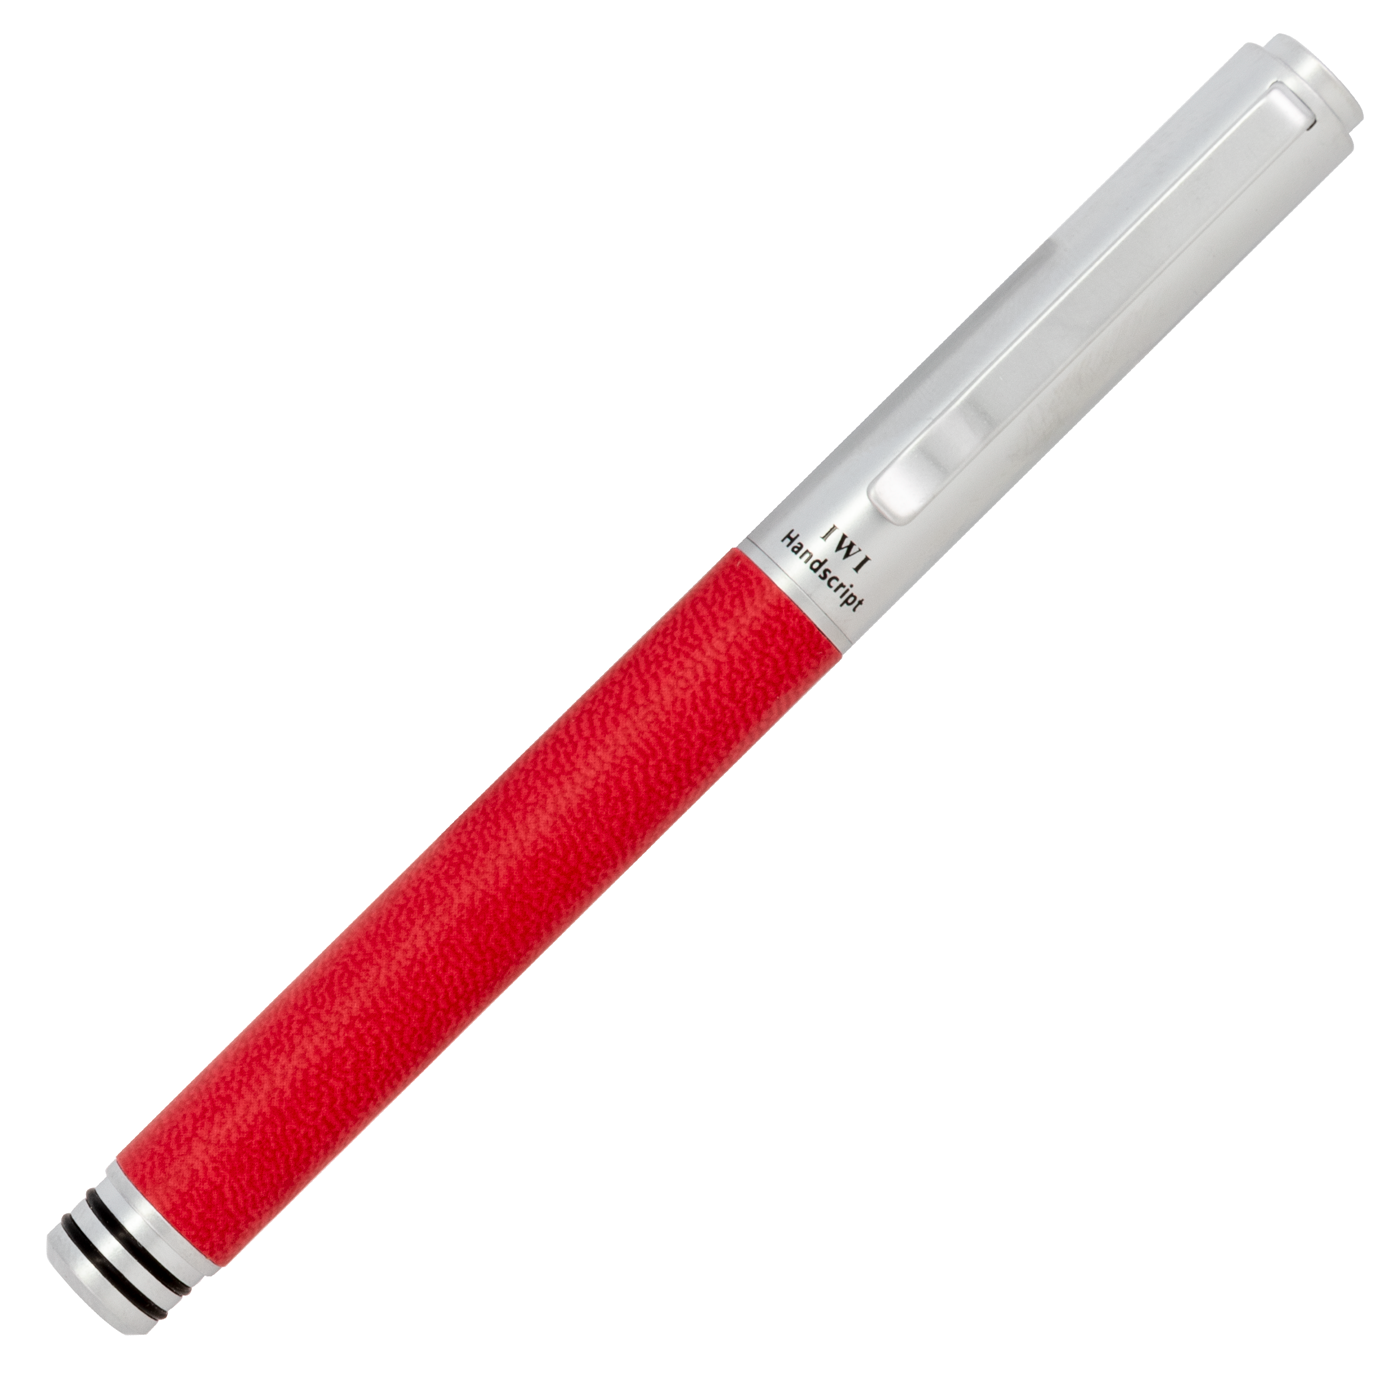 IWI Handscript Fountain Pen- Red